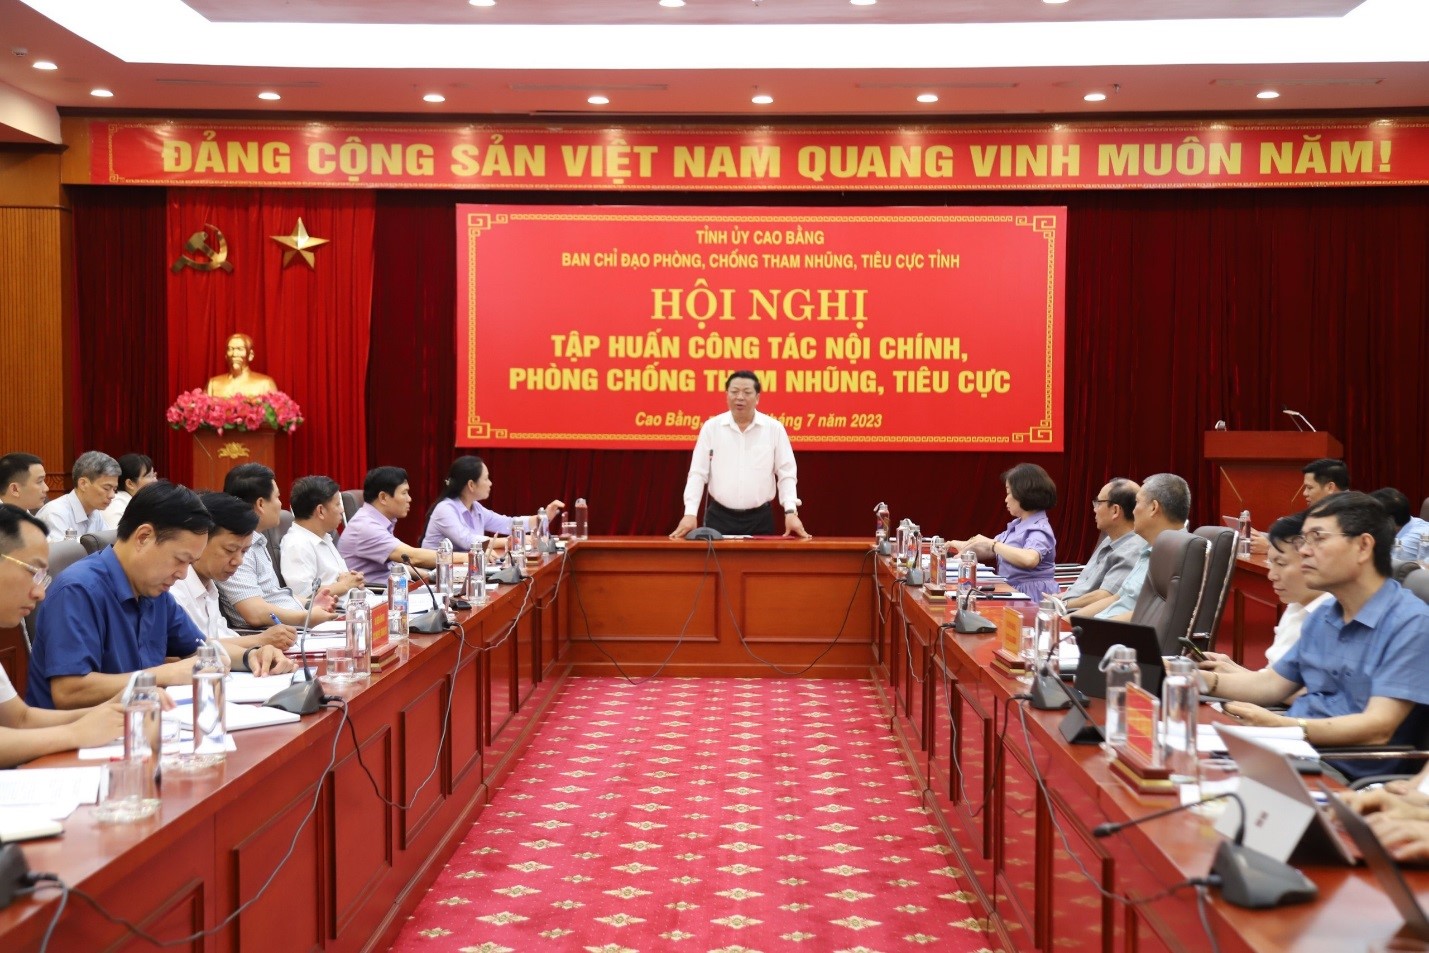 Đồng chí Trần Hồng Minh, Bí thư Tỉnh ủy, Trưởng Ban Chỉ đạo phòng, chống tham nhũng, tiêu cực tỉnh Cao Bằng phát biểu tại Hội nghị